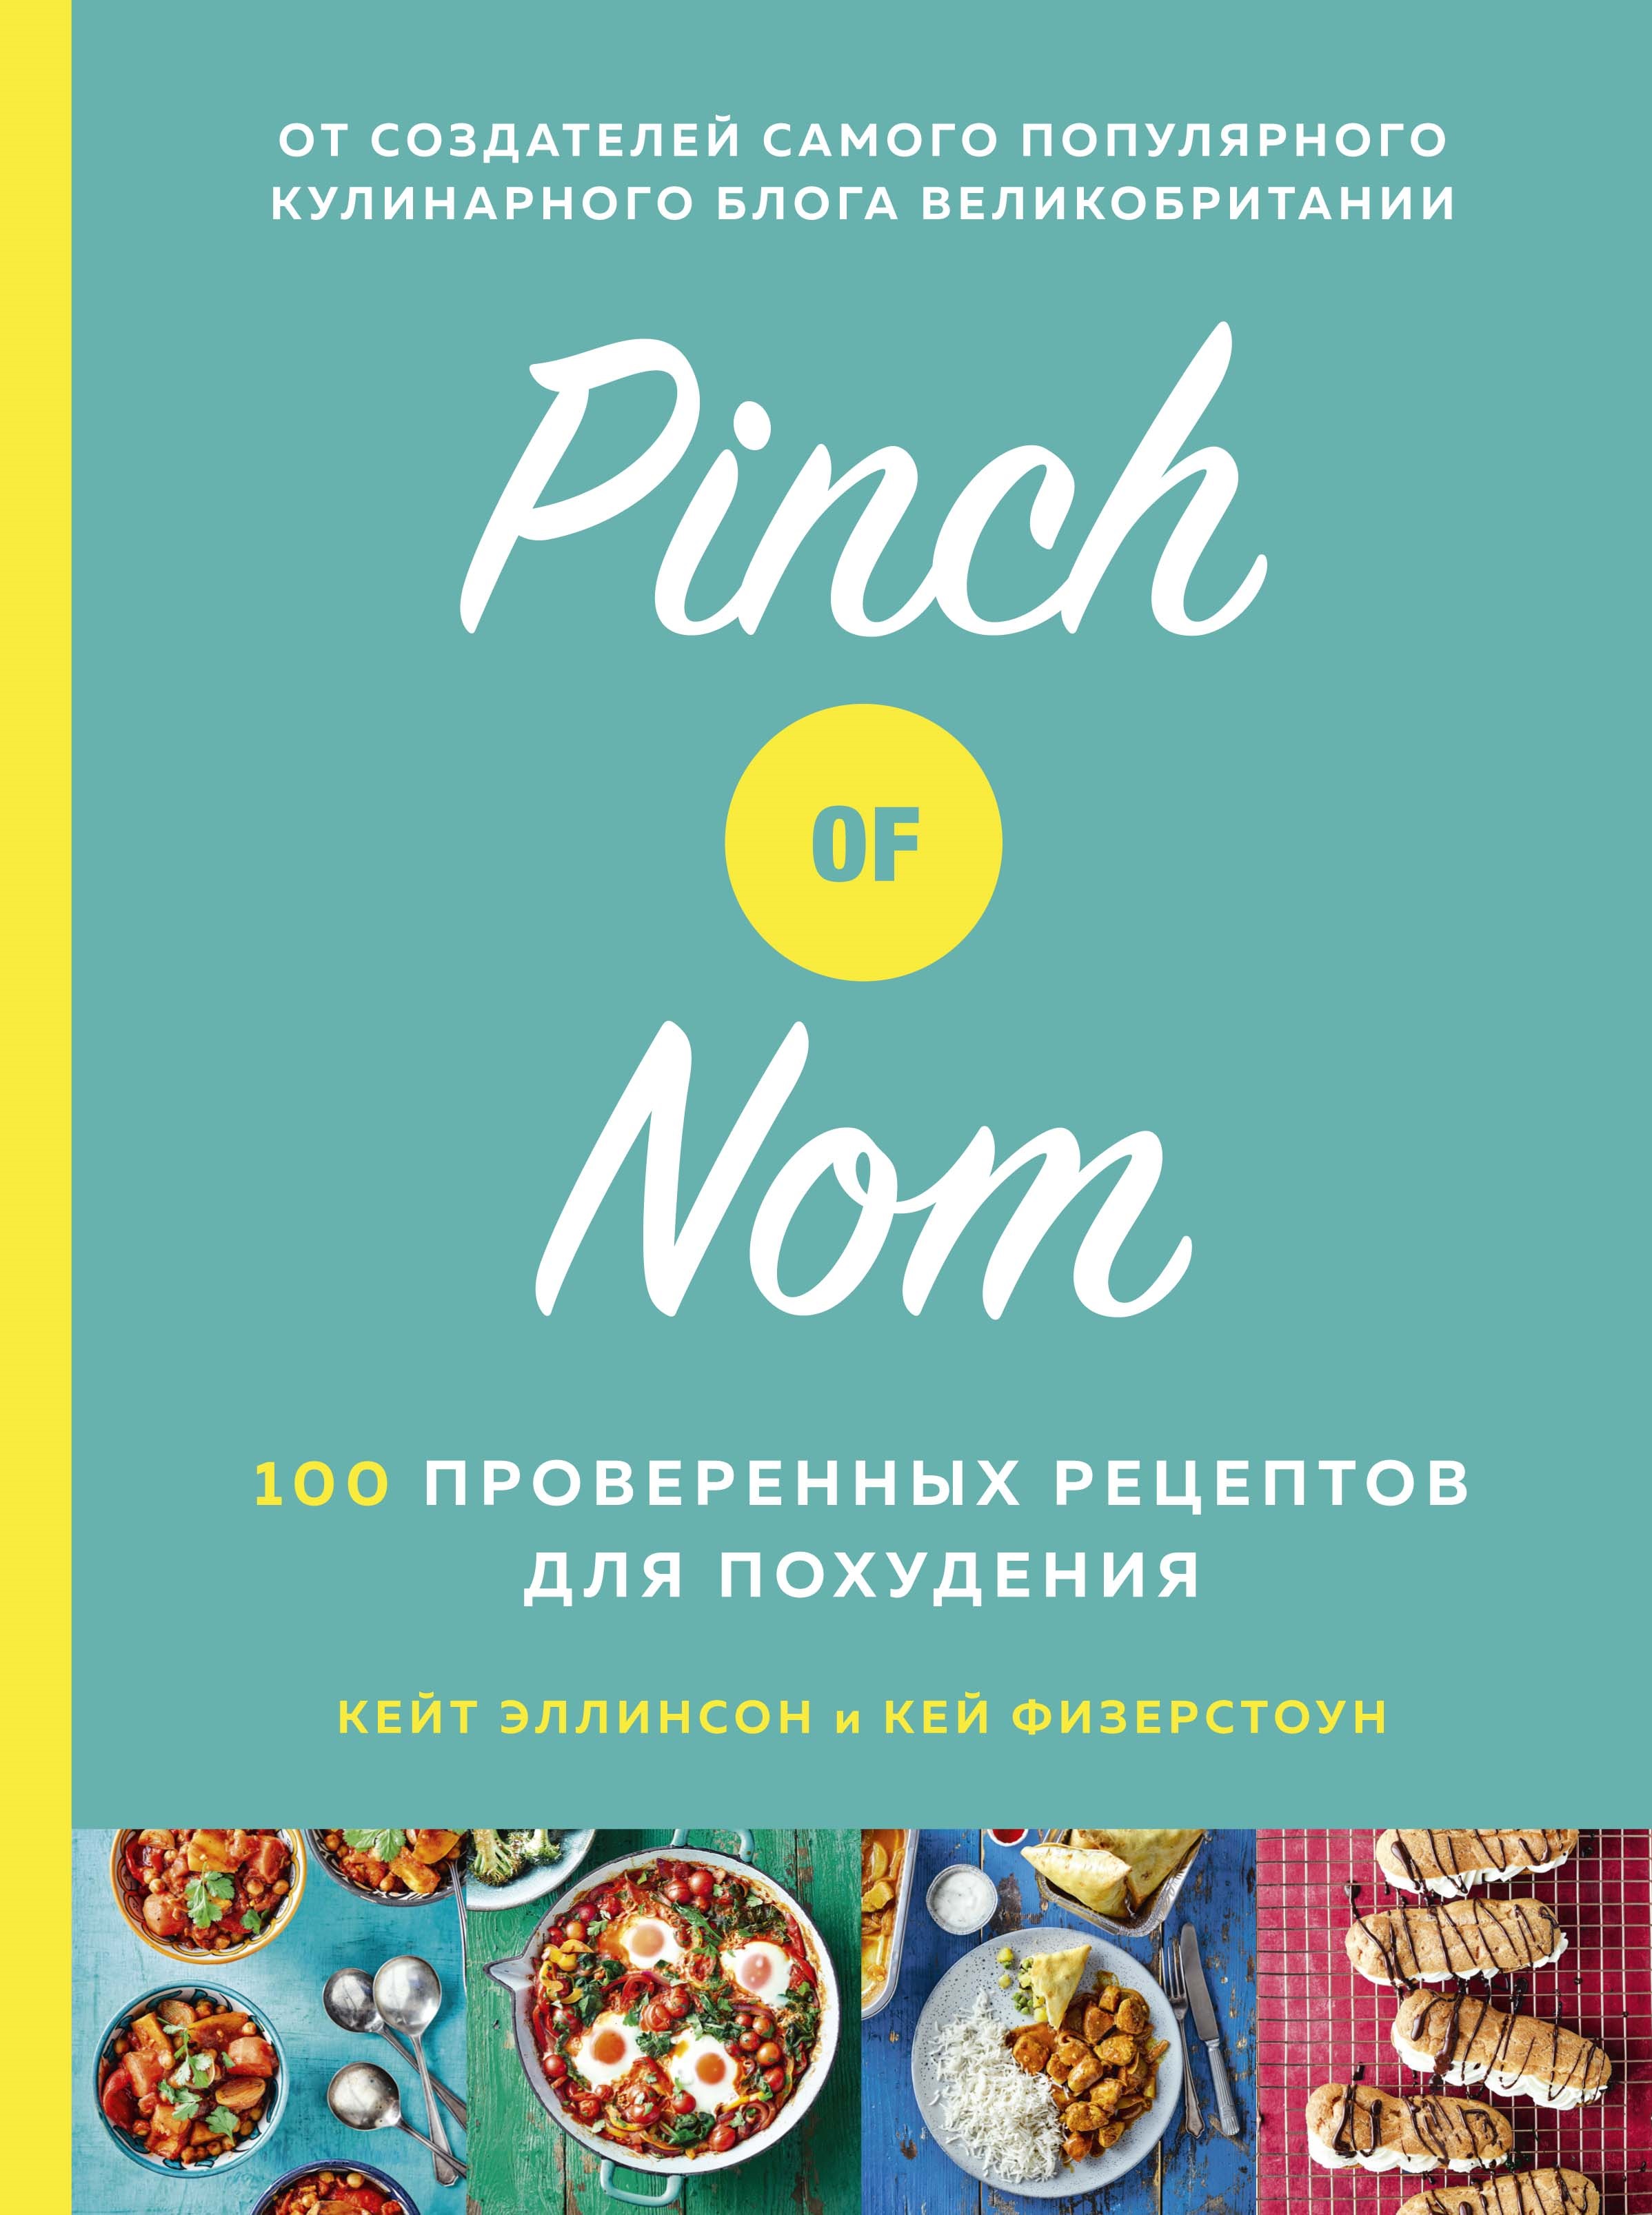 Физерстоун Кей Pinch of Nom: 100 проверенных рецептов для похудения allinson kate davis laura физерстоун кей pinch of nom food planner everyday light